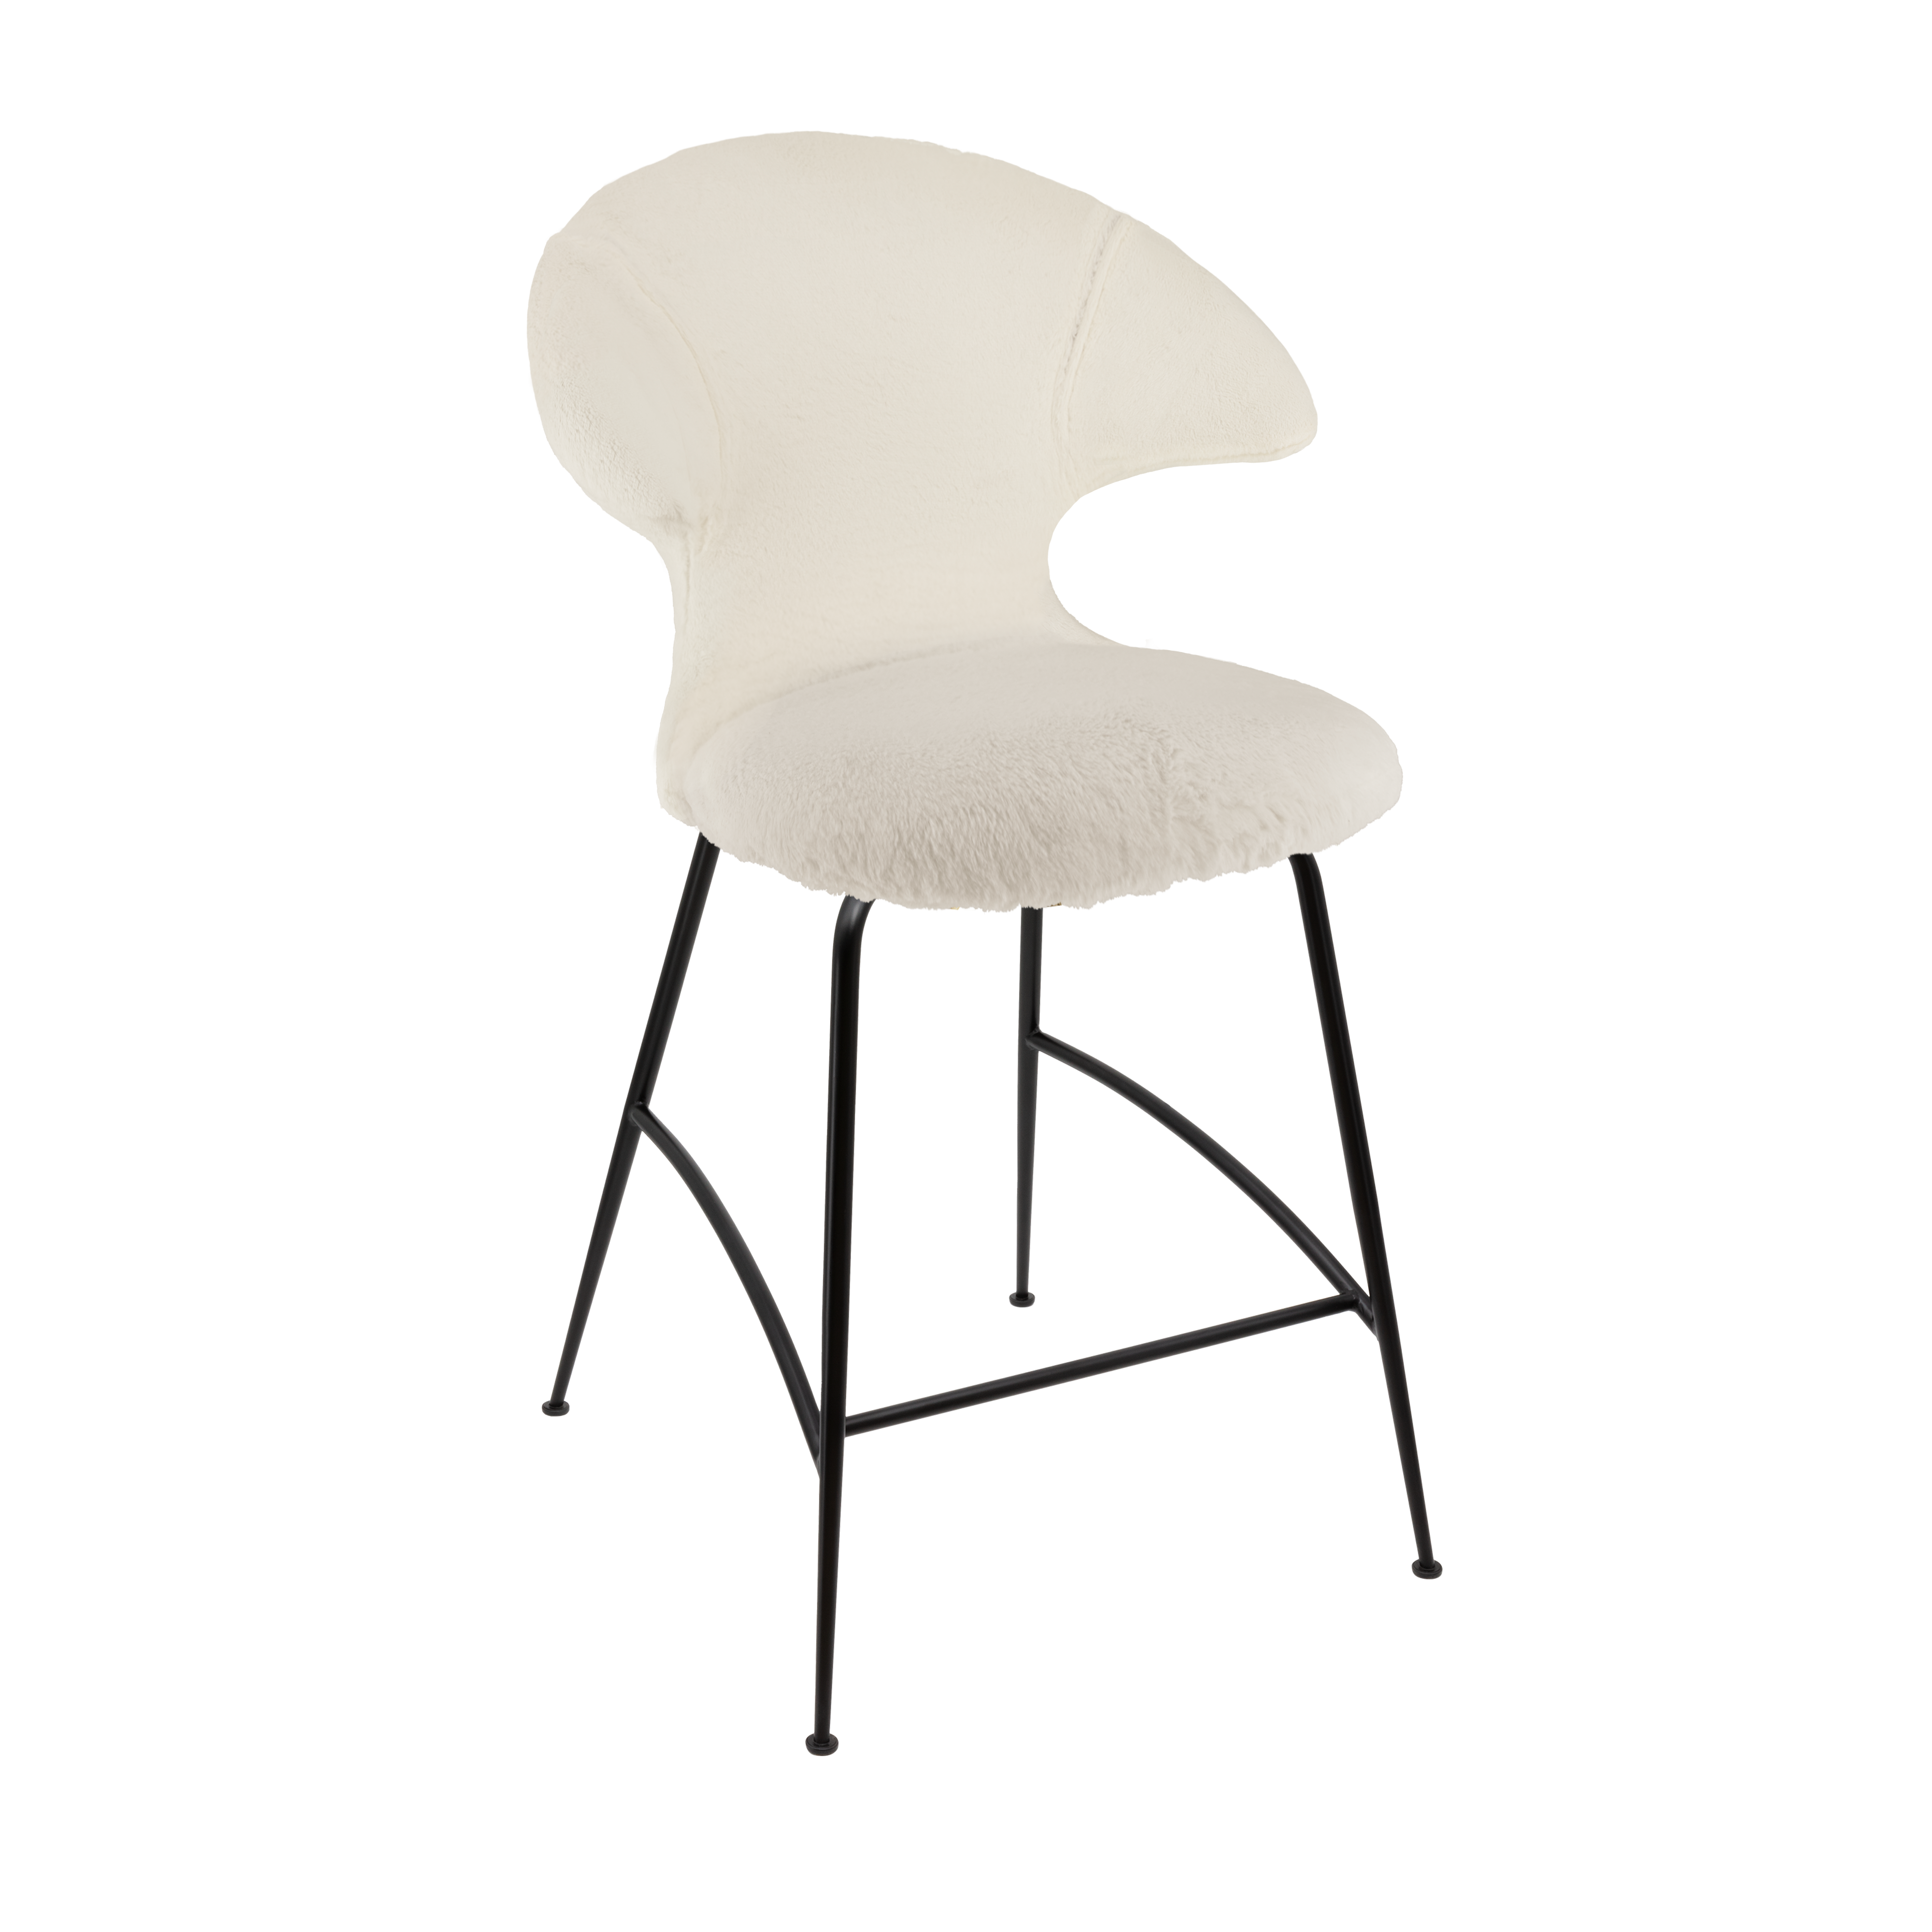 Time Flies Counter Stuhl in Teddy White präsentiert im Onlineshop von KAQTU Design AG. Barstuhl mit Armlehne ist von Umage